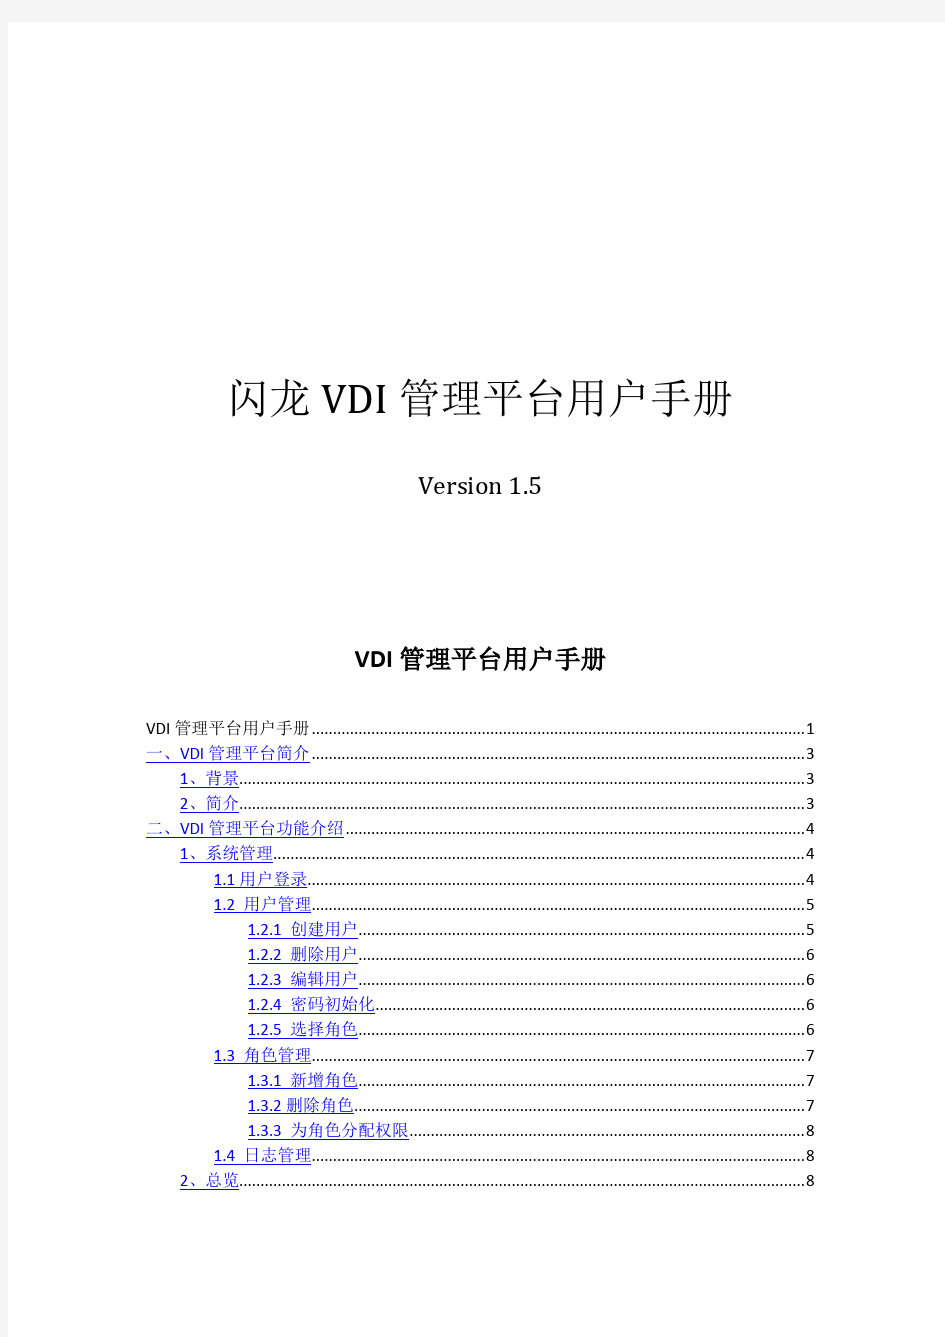 VDI管理平台用户手册